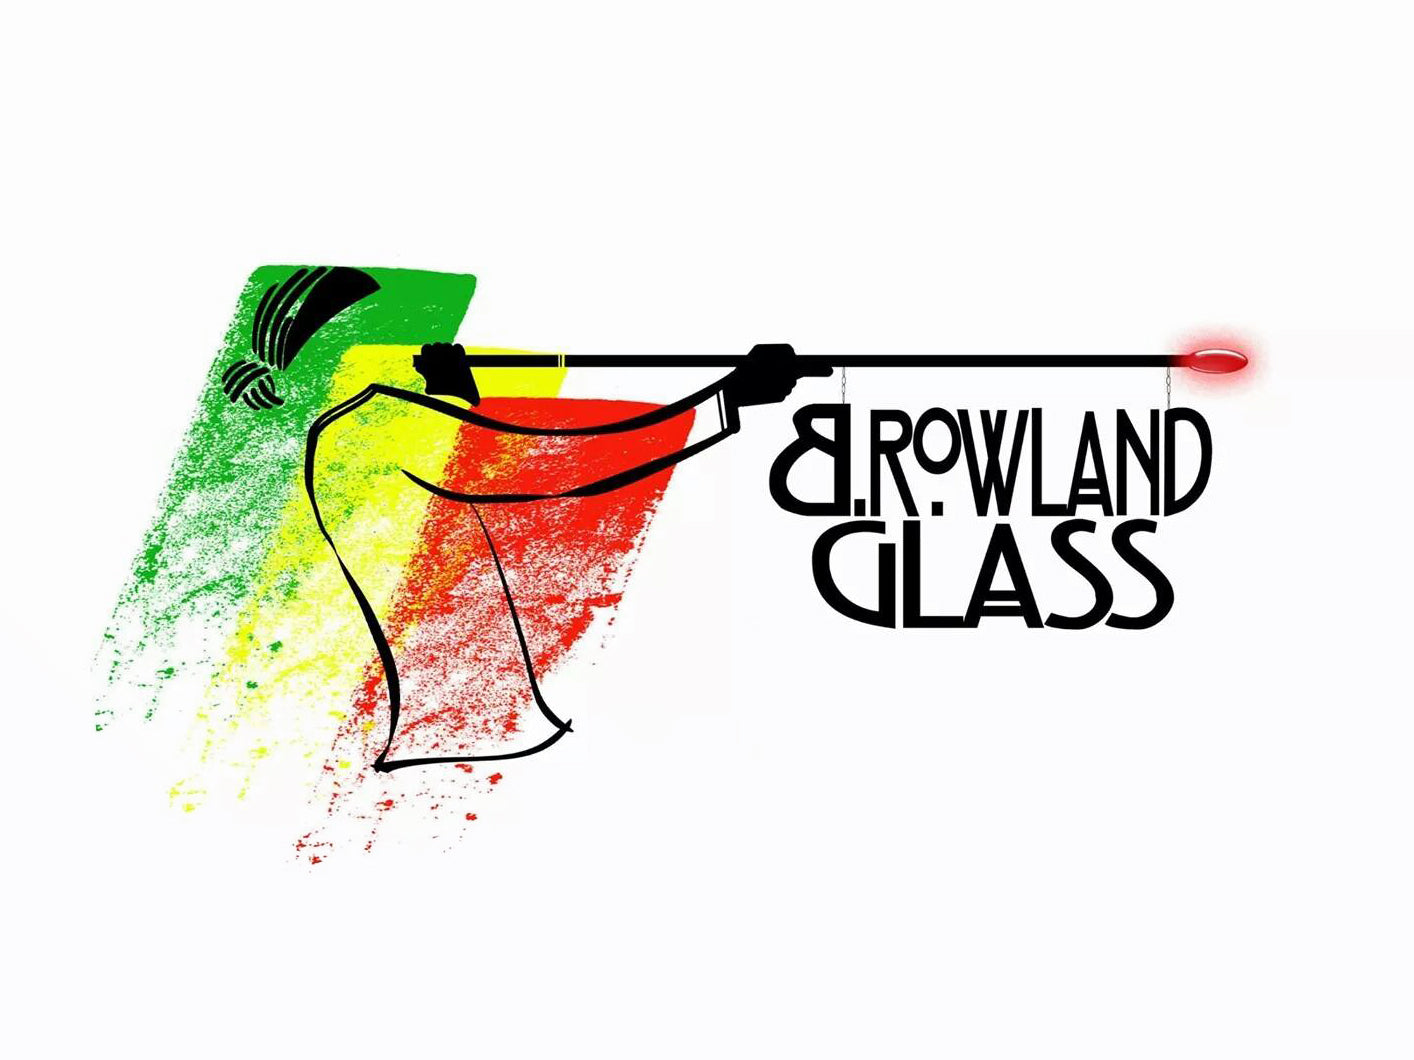 B Rowland Glass